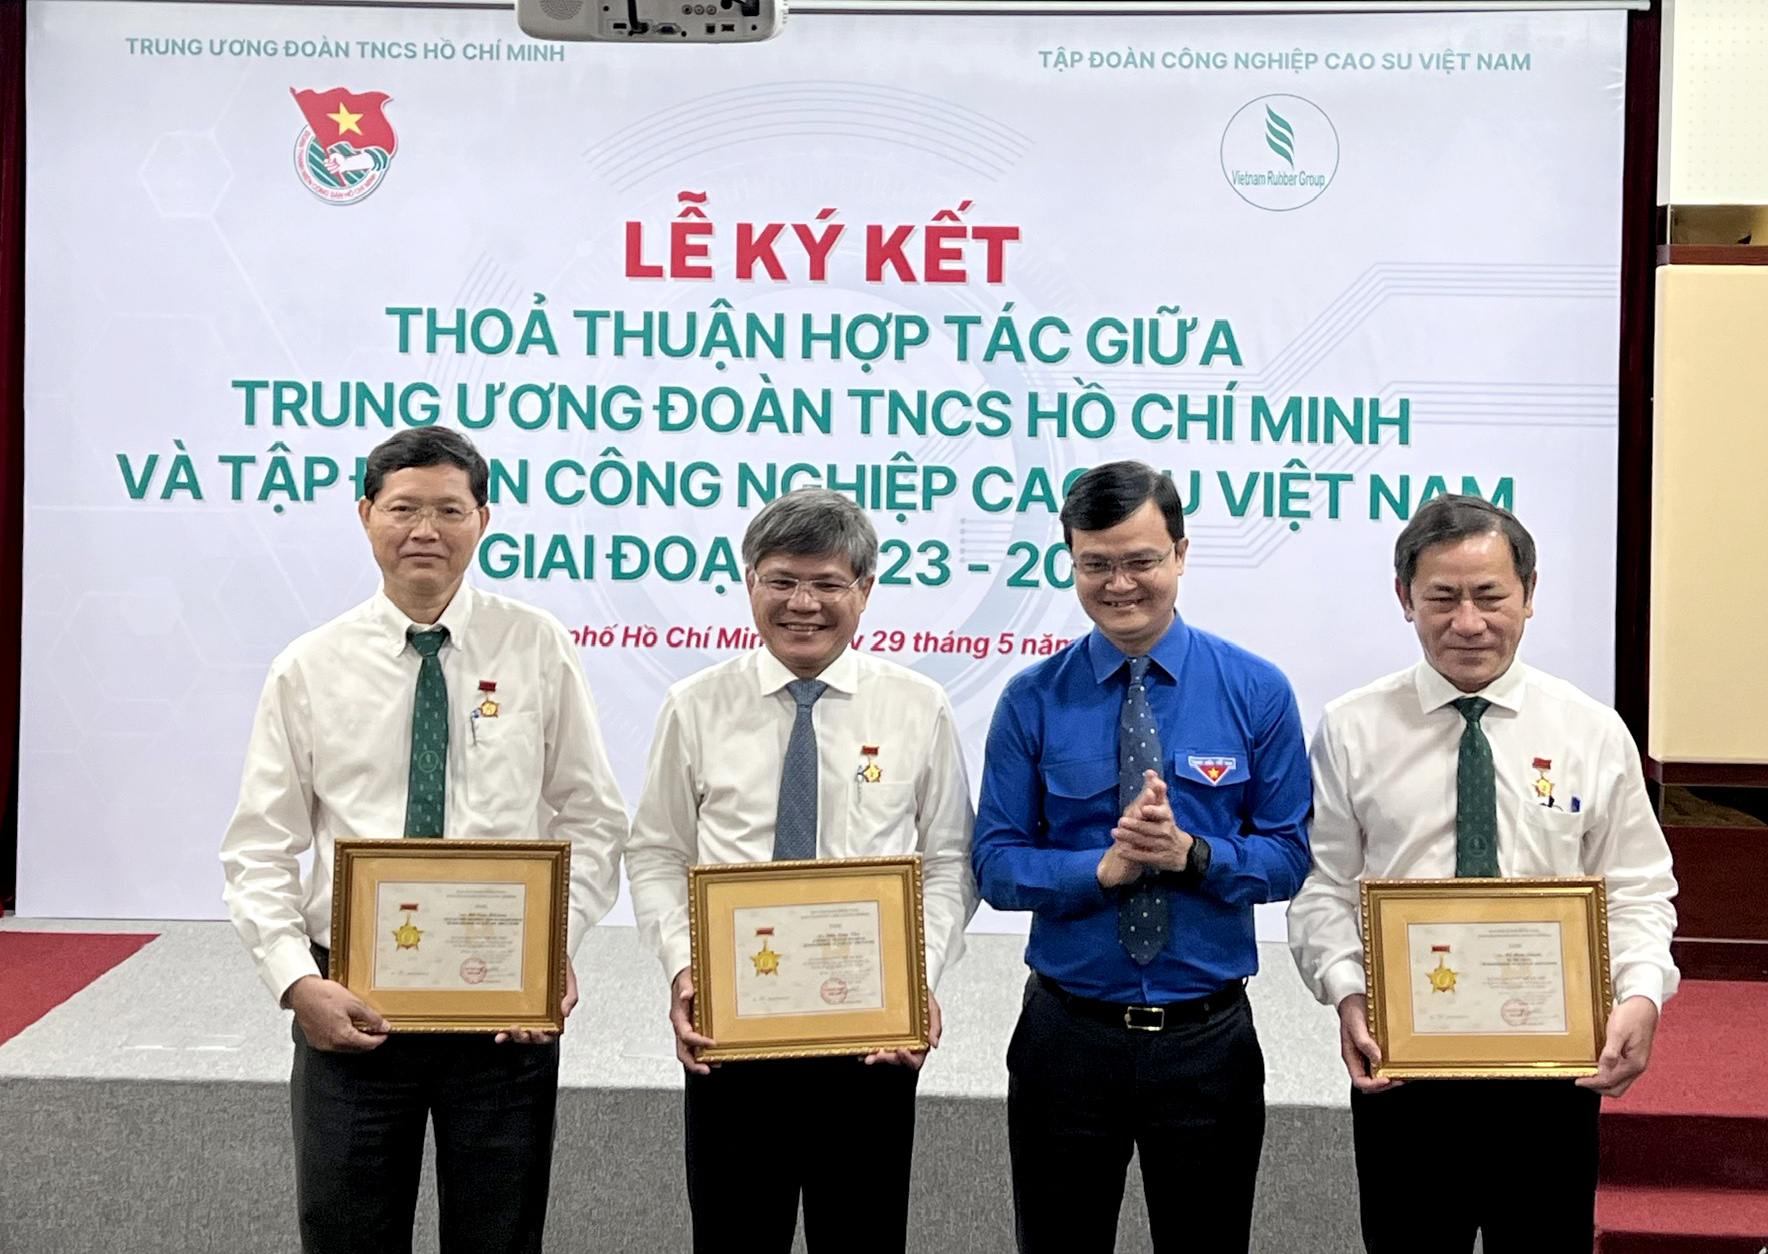 Ba lãnh đạo của VRG nhận Kỷ niệm chương Vì thế hệ trẻ do Trung ương Đoàn TNCS Hồ Chí Minh trao tặng. Ảnh: Thanh Sơn.